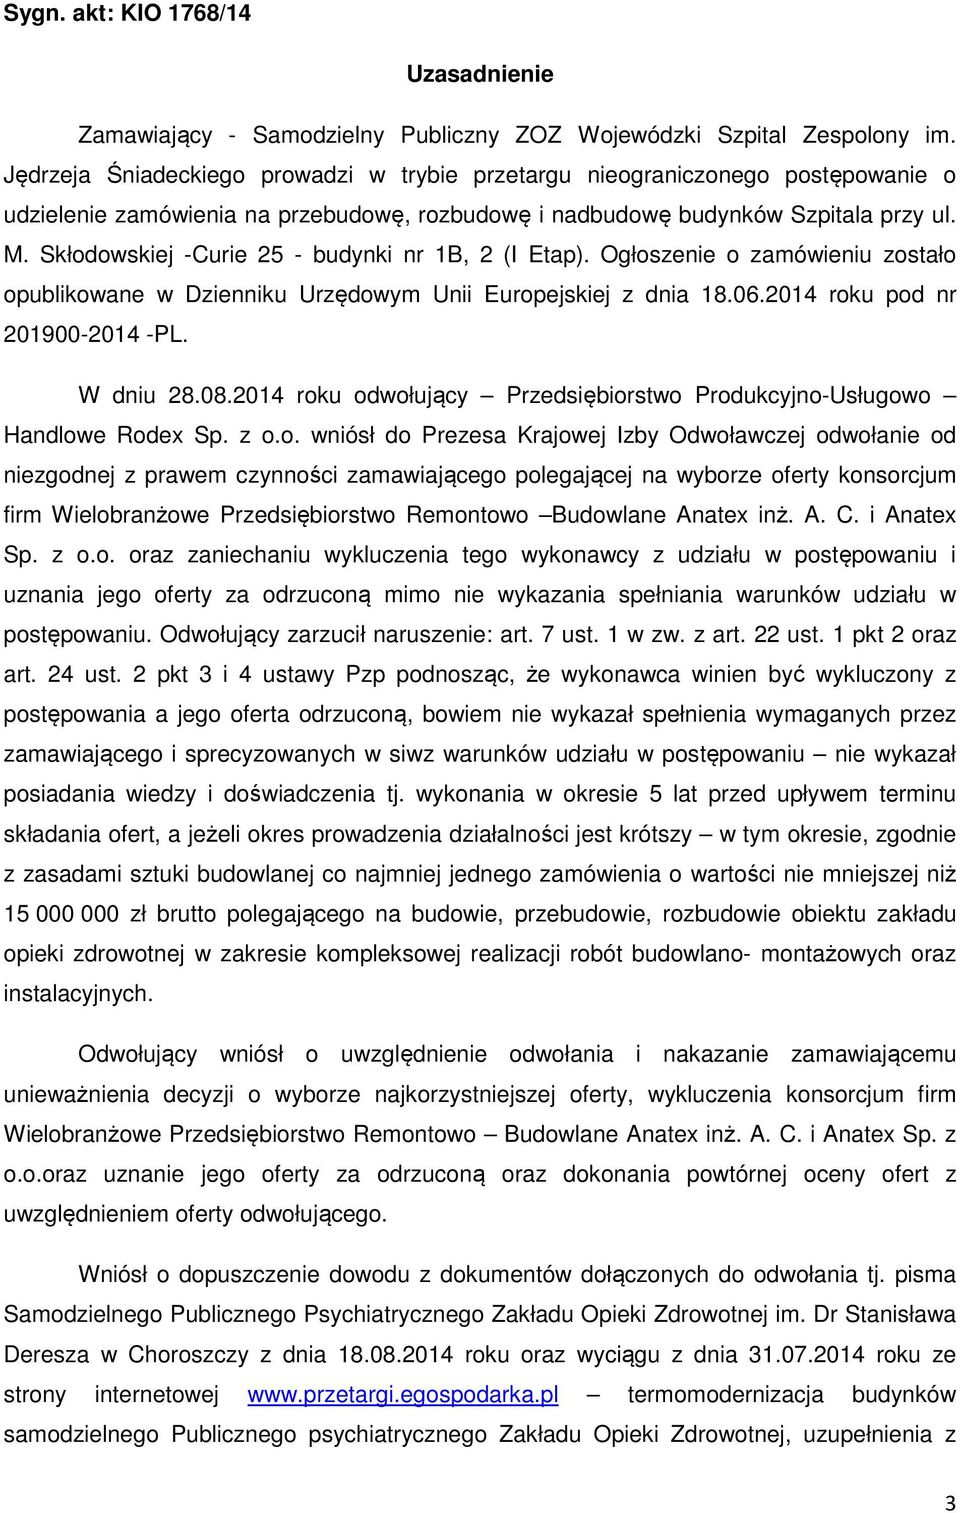 Skłodowskiej -Curie 25 - budynki nr 1B, 2 (I Etap). Ogłoszenie o zamówieniu zostało opublikowane w Dzienniku Urzędowym Unii Europejskiej z dnia 18.06.2014 roku pod nr 201900-2014 -PL. W dniu 28.08.